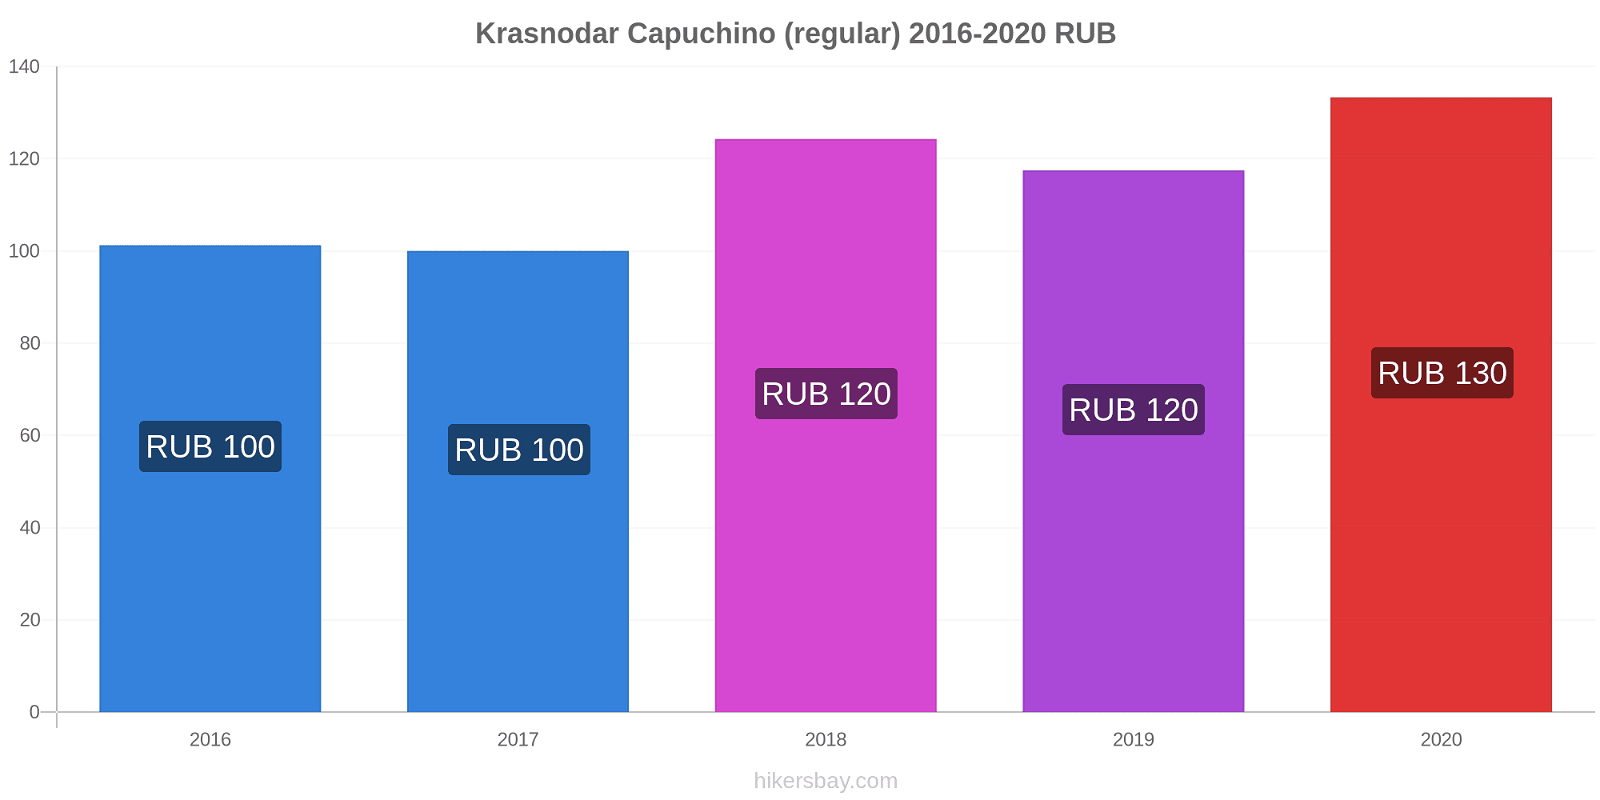 Krasnodar cambios de precios Capuchino (regular) hikersbay.com